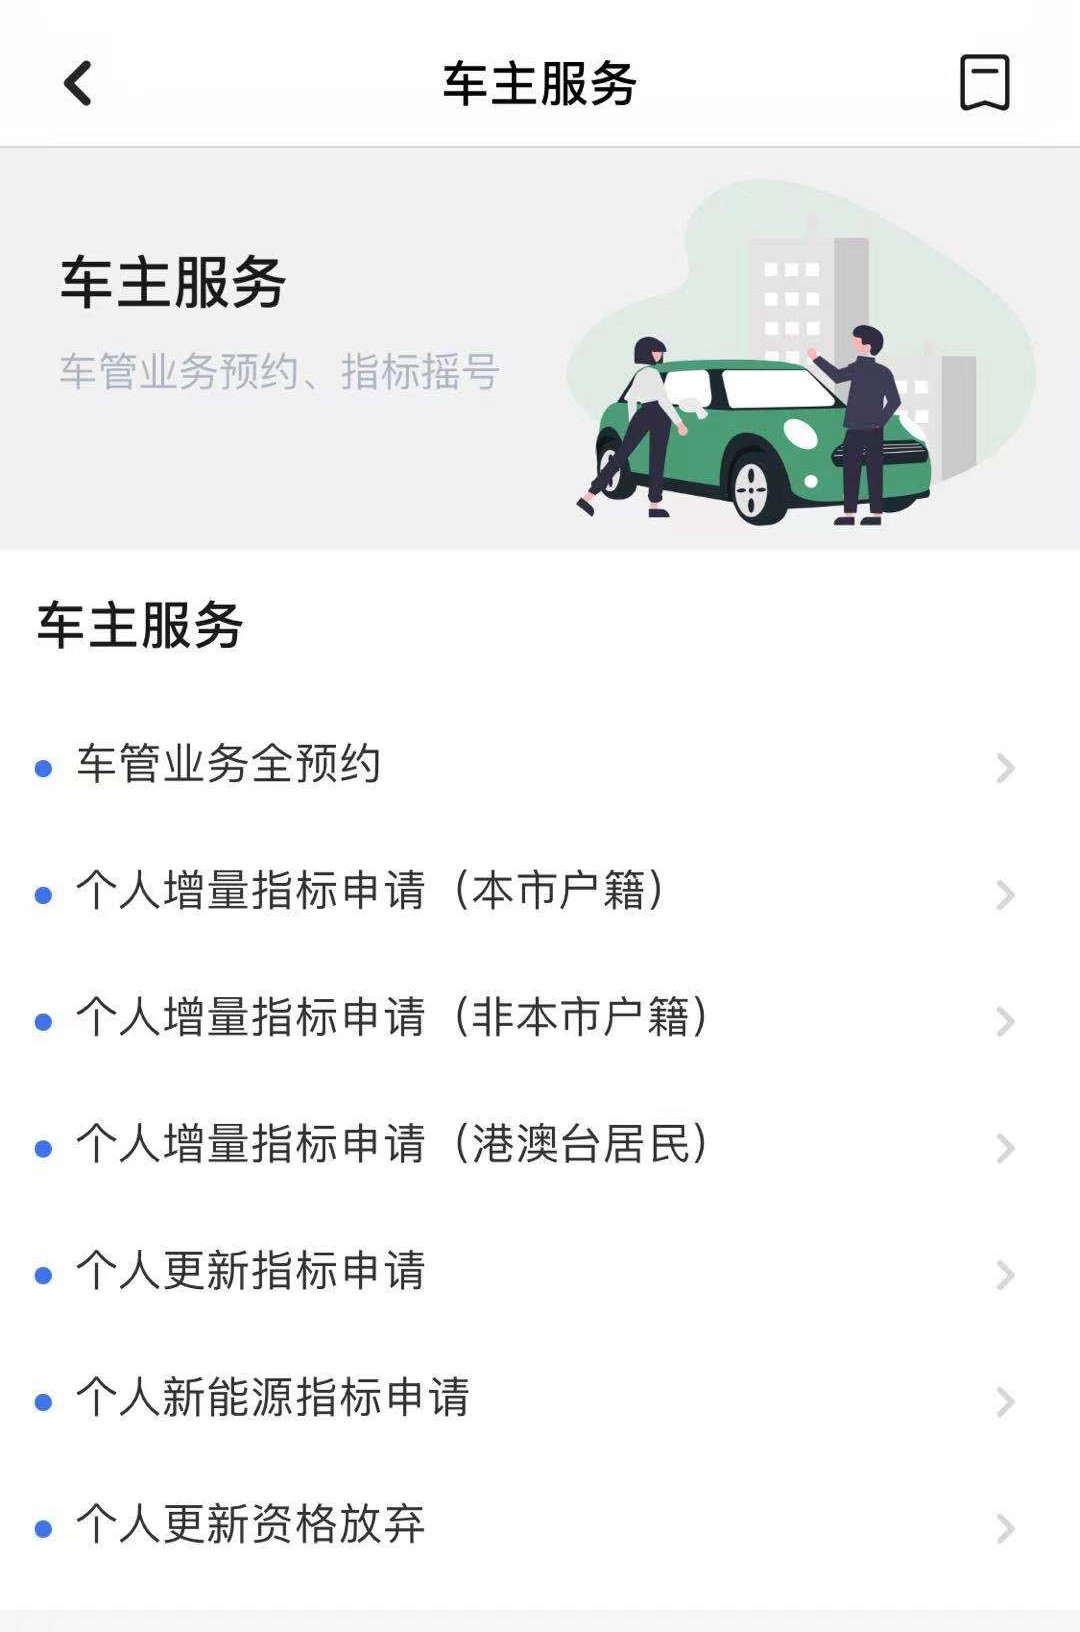 广州车牌摇号申请网站图片